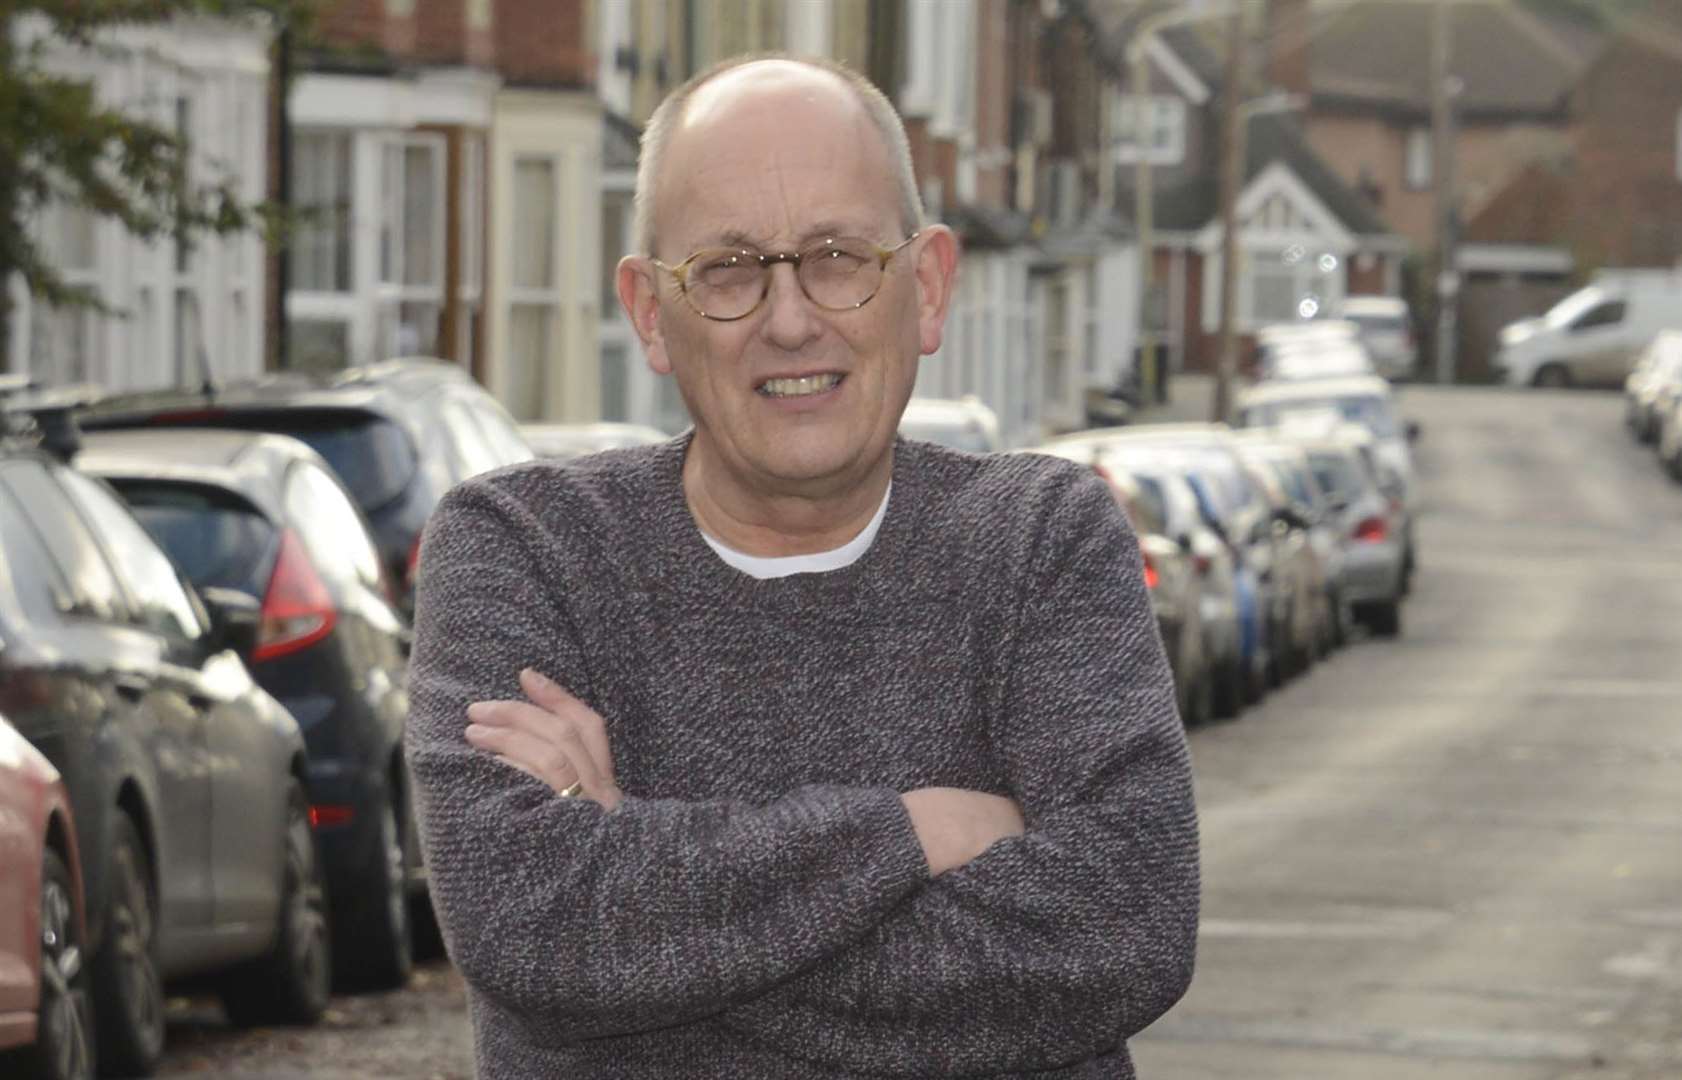 Canterbury councillor Derek Maslin